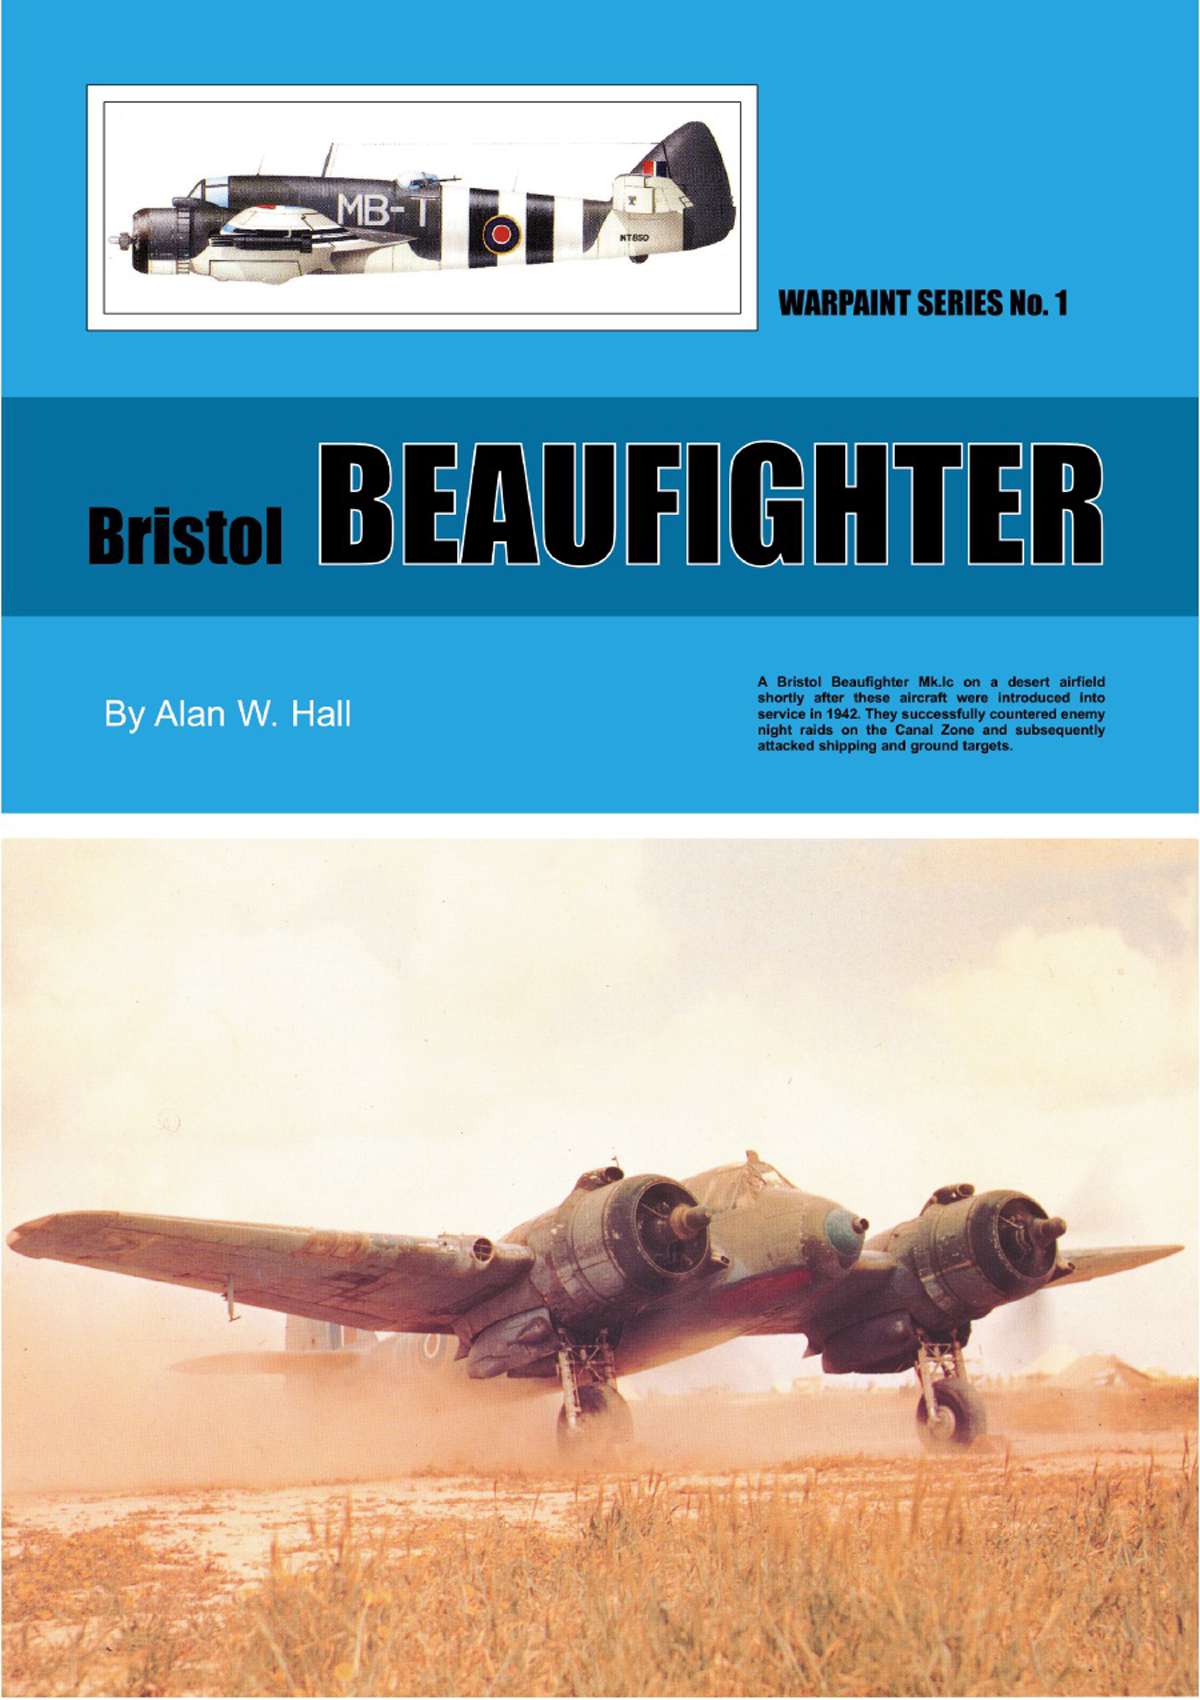 N1 - Bristol Beaufighter